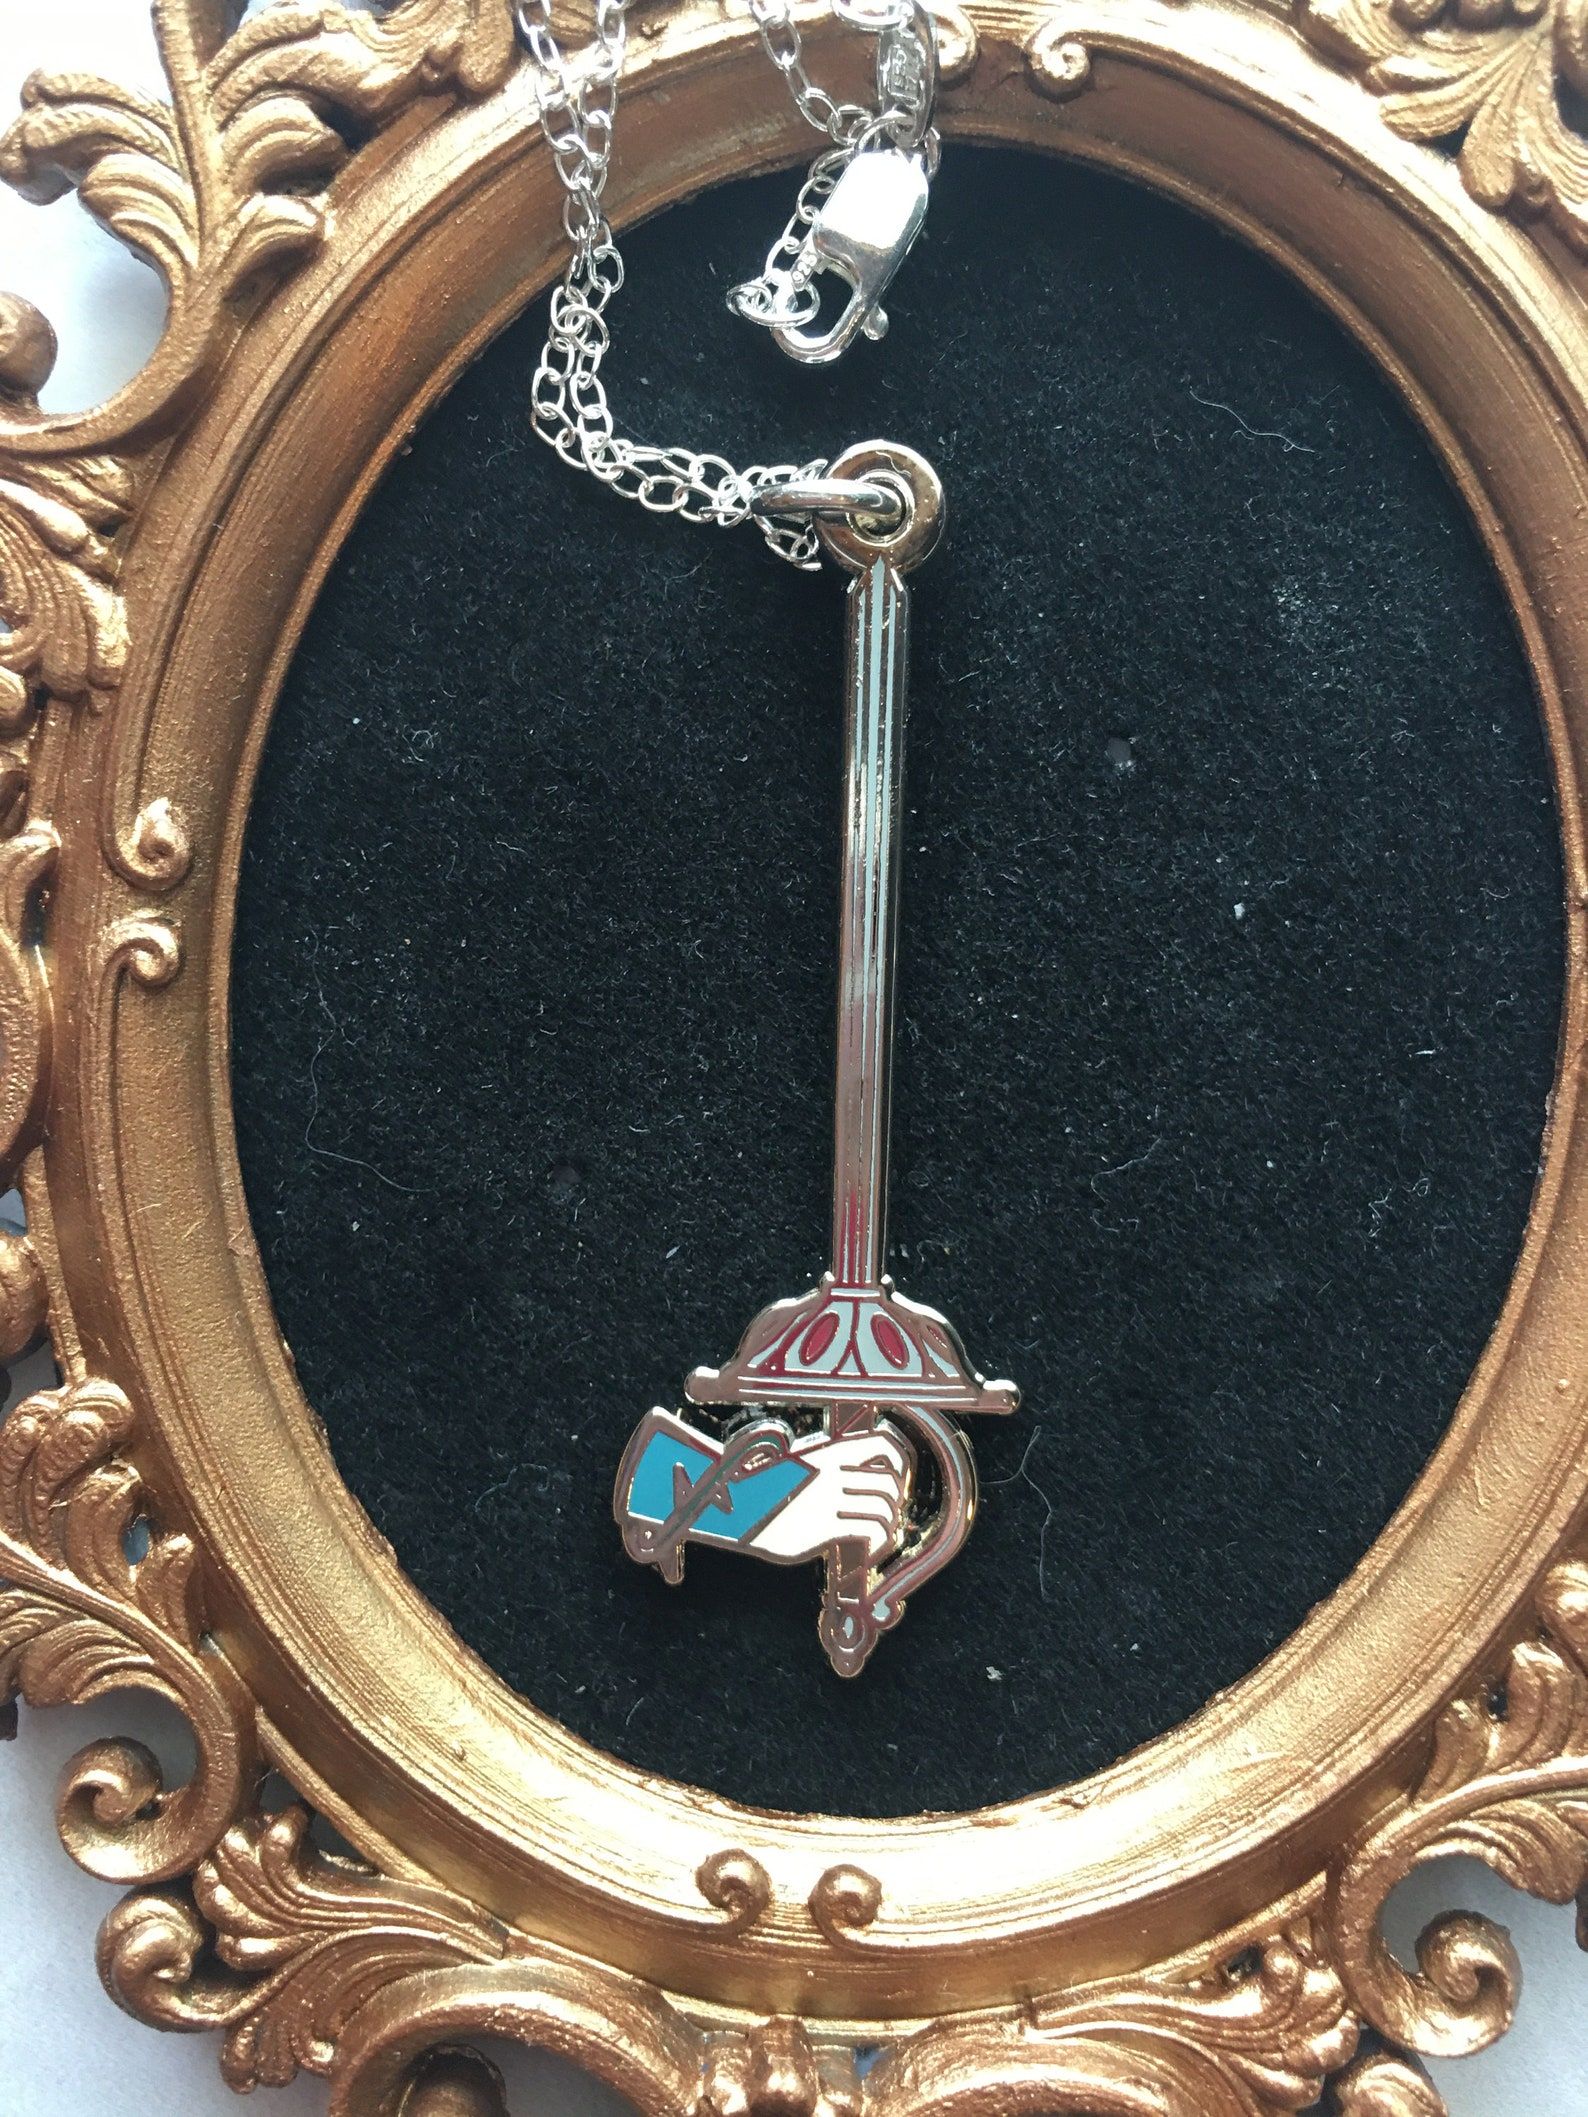 An enamel sword charm on a chain